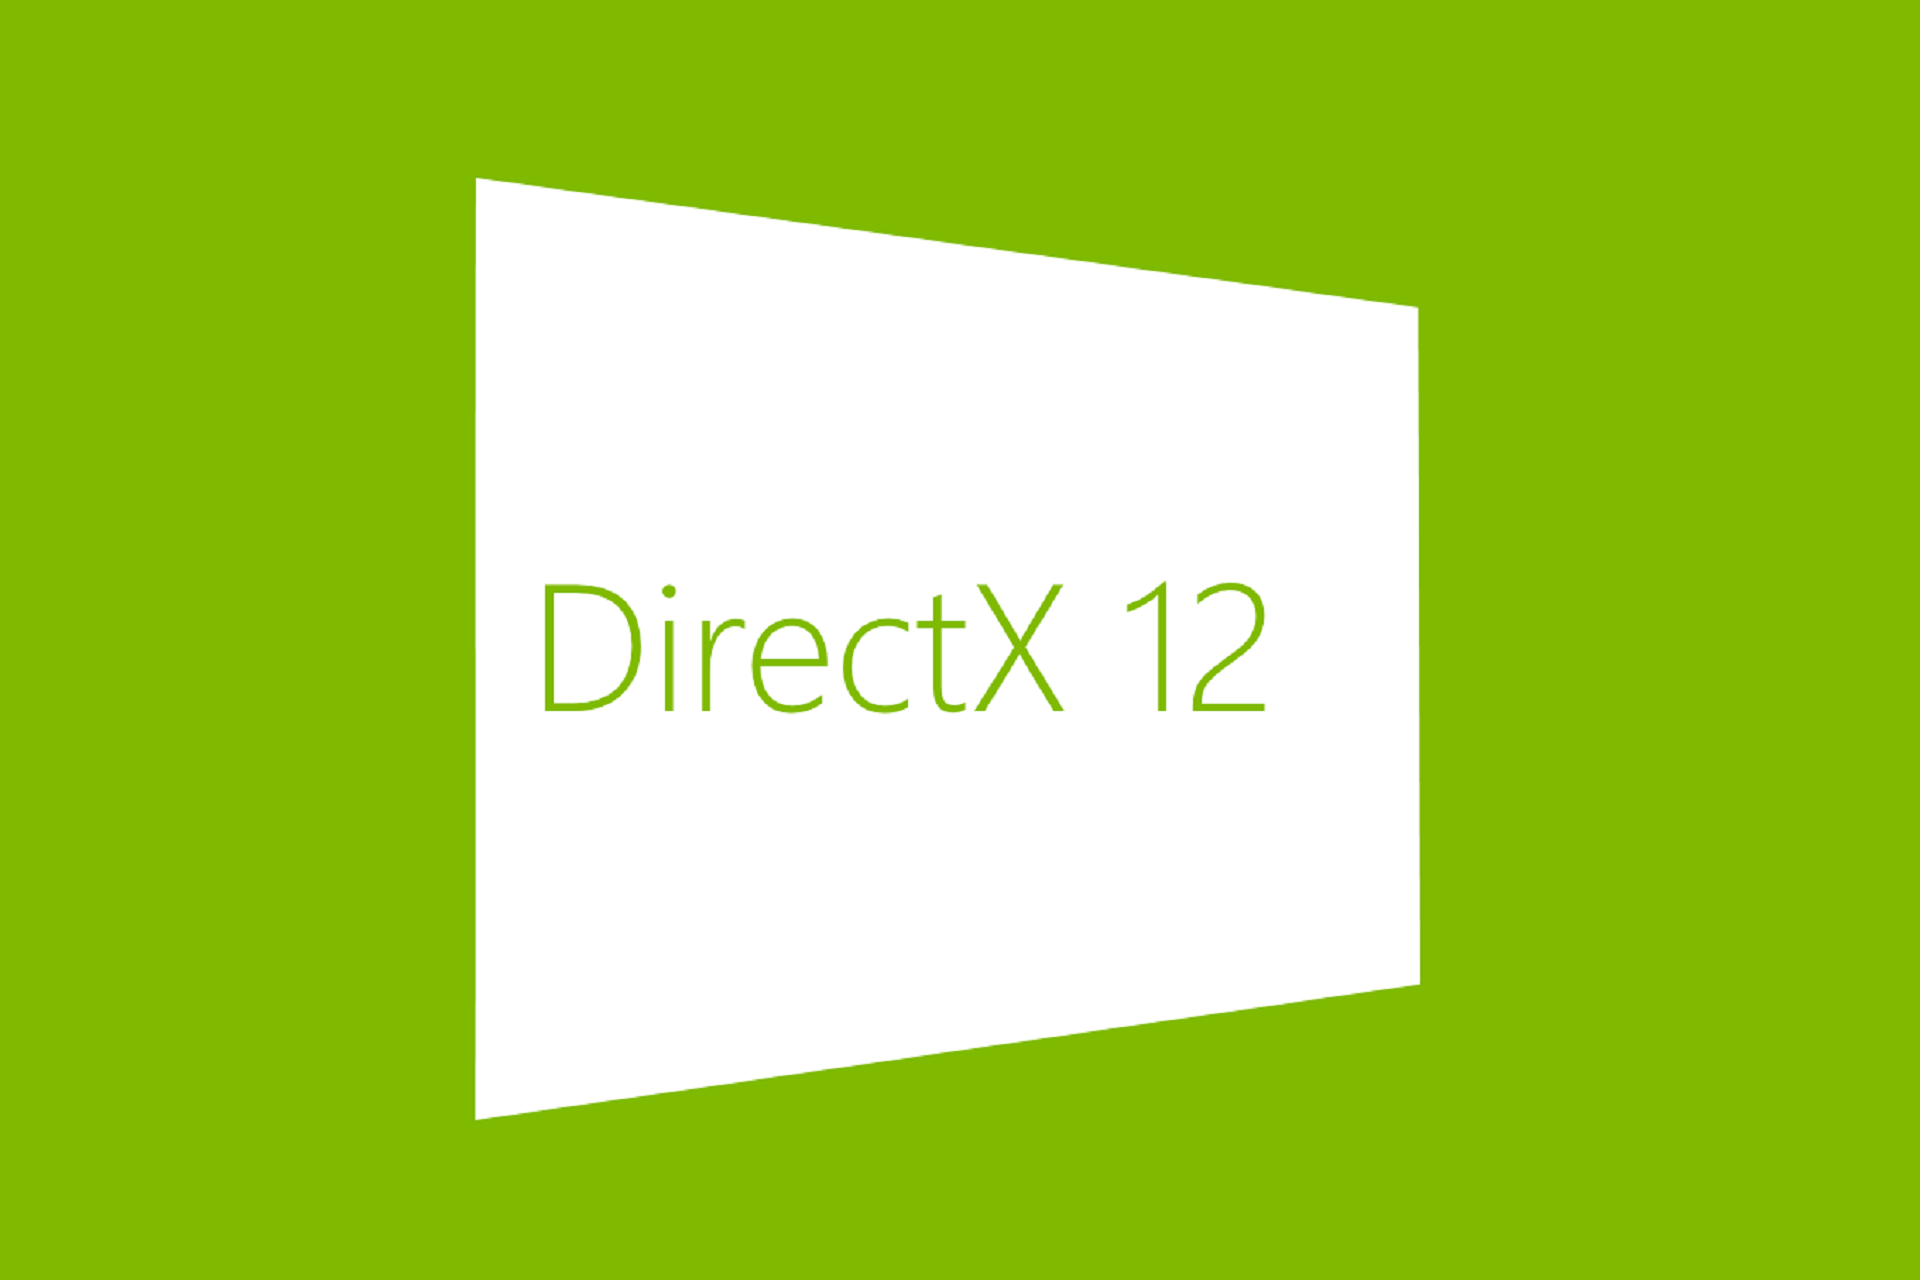 directx windows 8.1 pro 64 bit